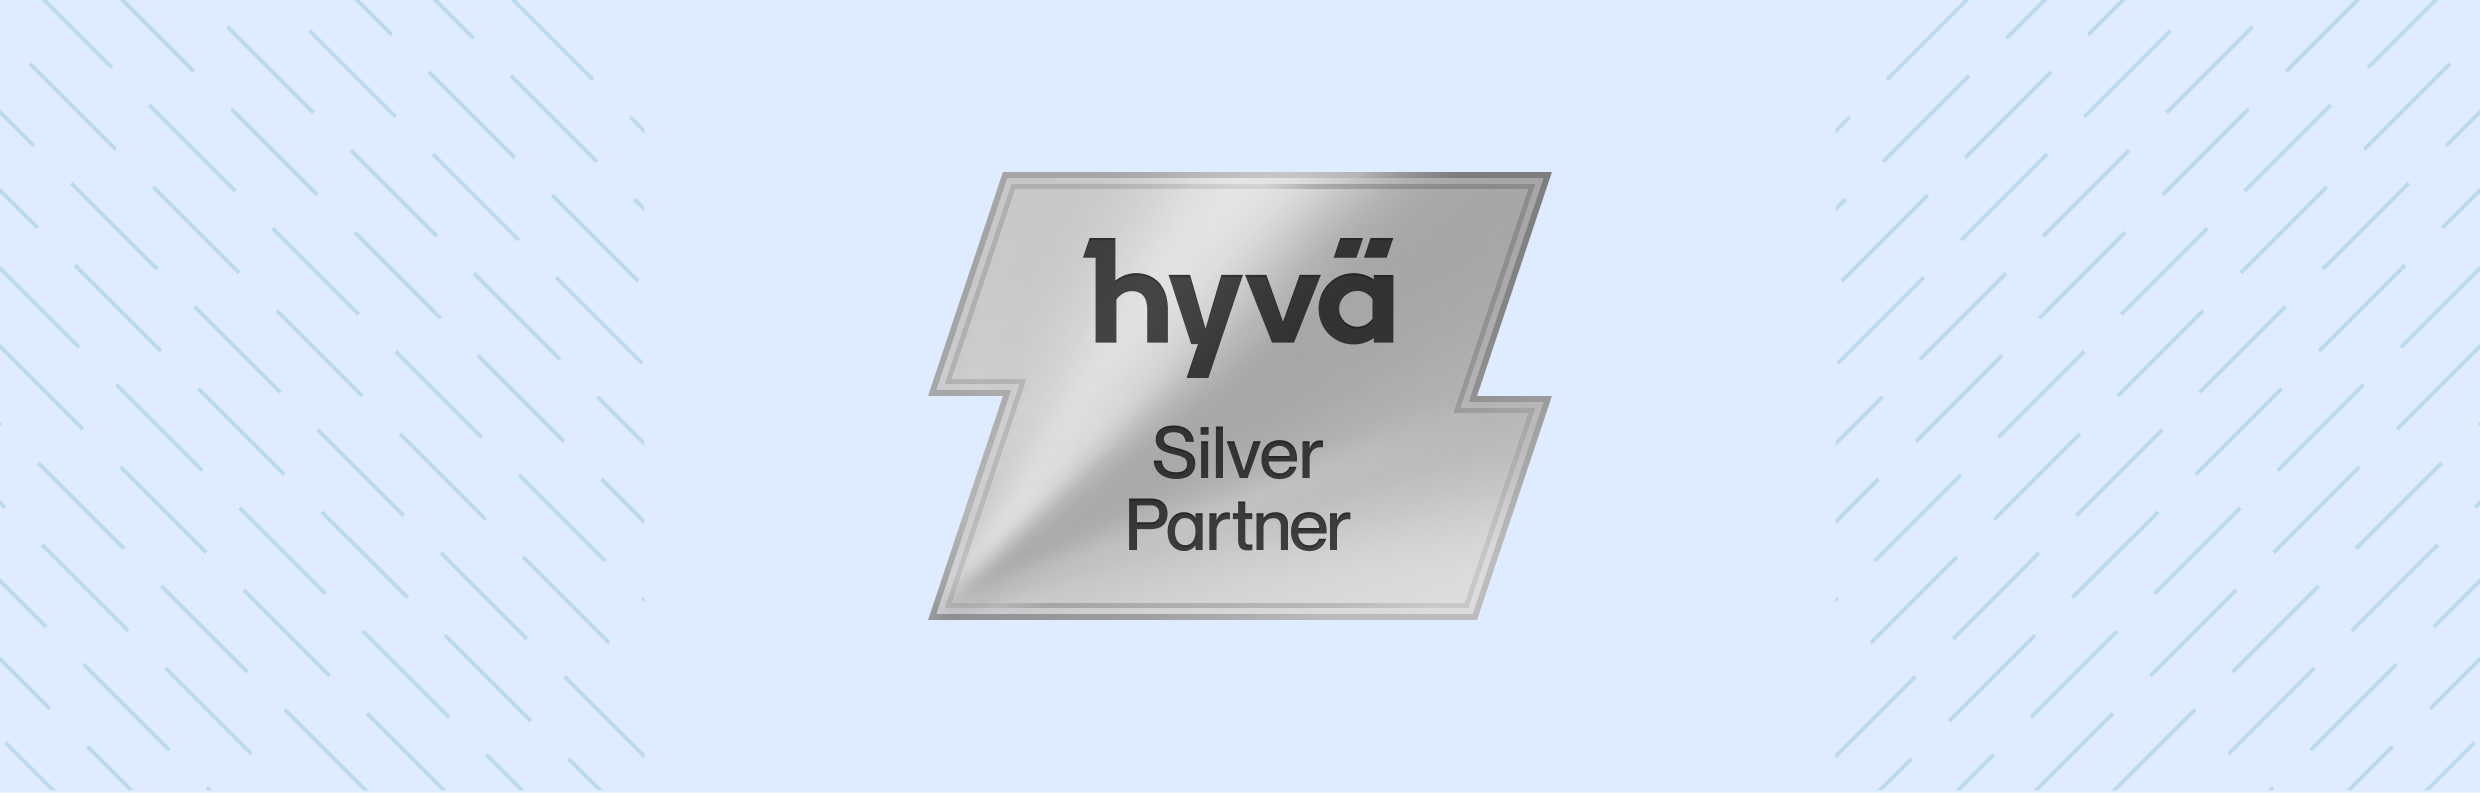 Hyva Silver Partner Agency - Aureate Labs